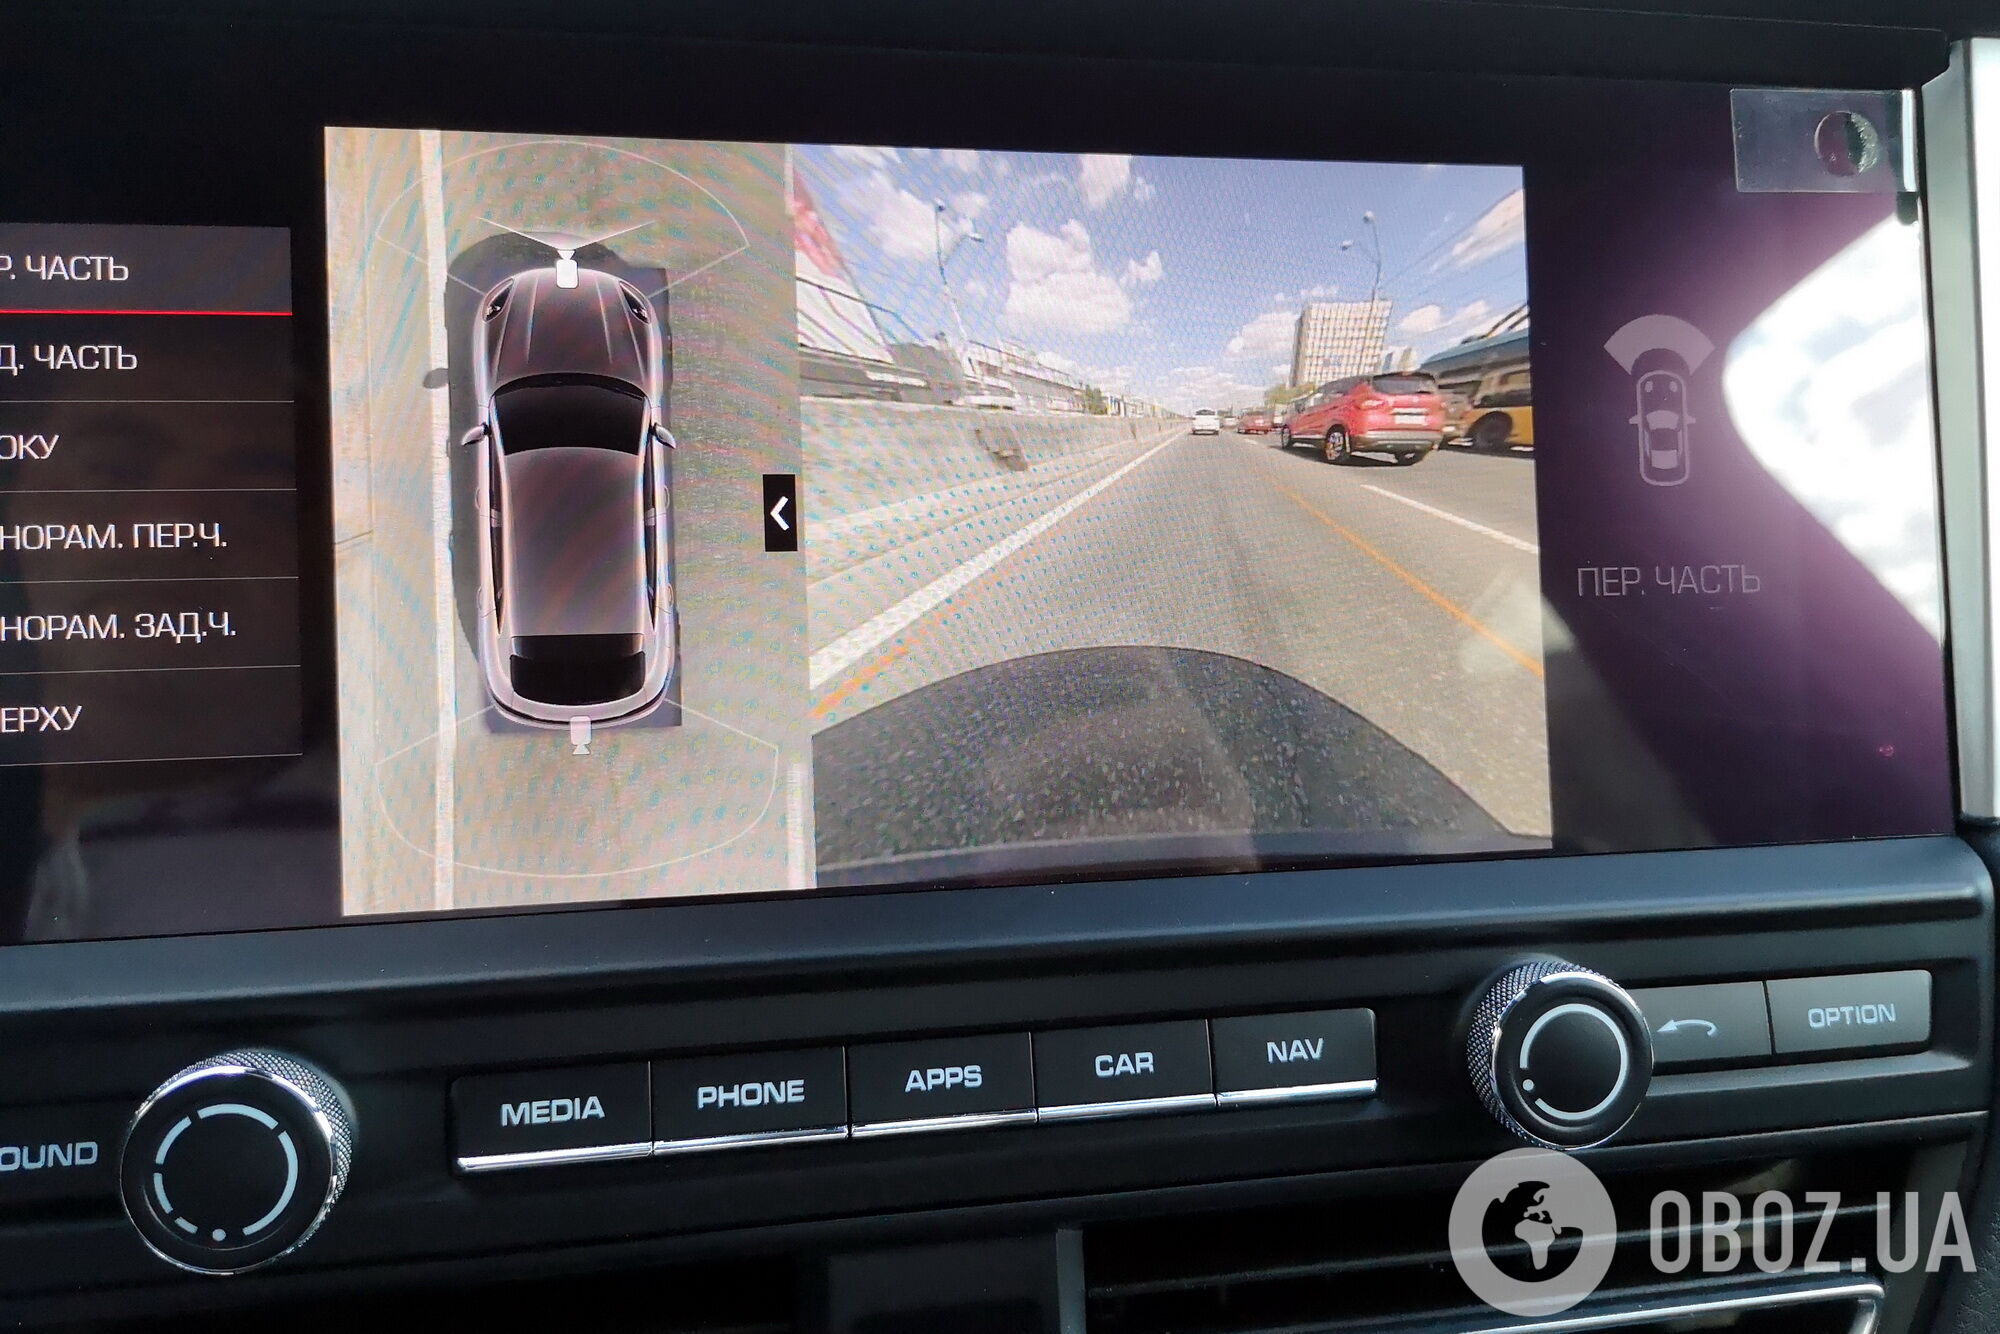 Камеры кругового обзора позволяют контролировать пространство вокруг автомобиля. Фото: